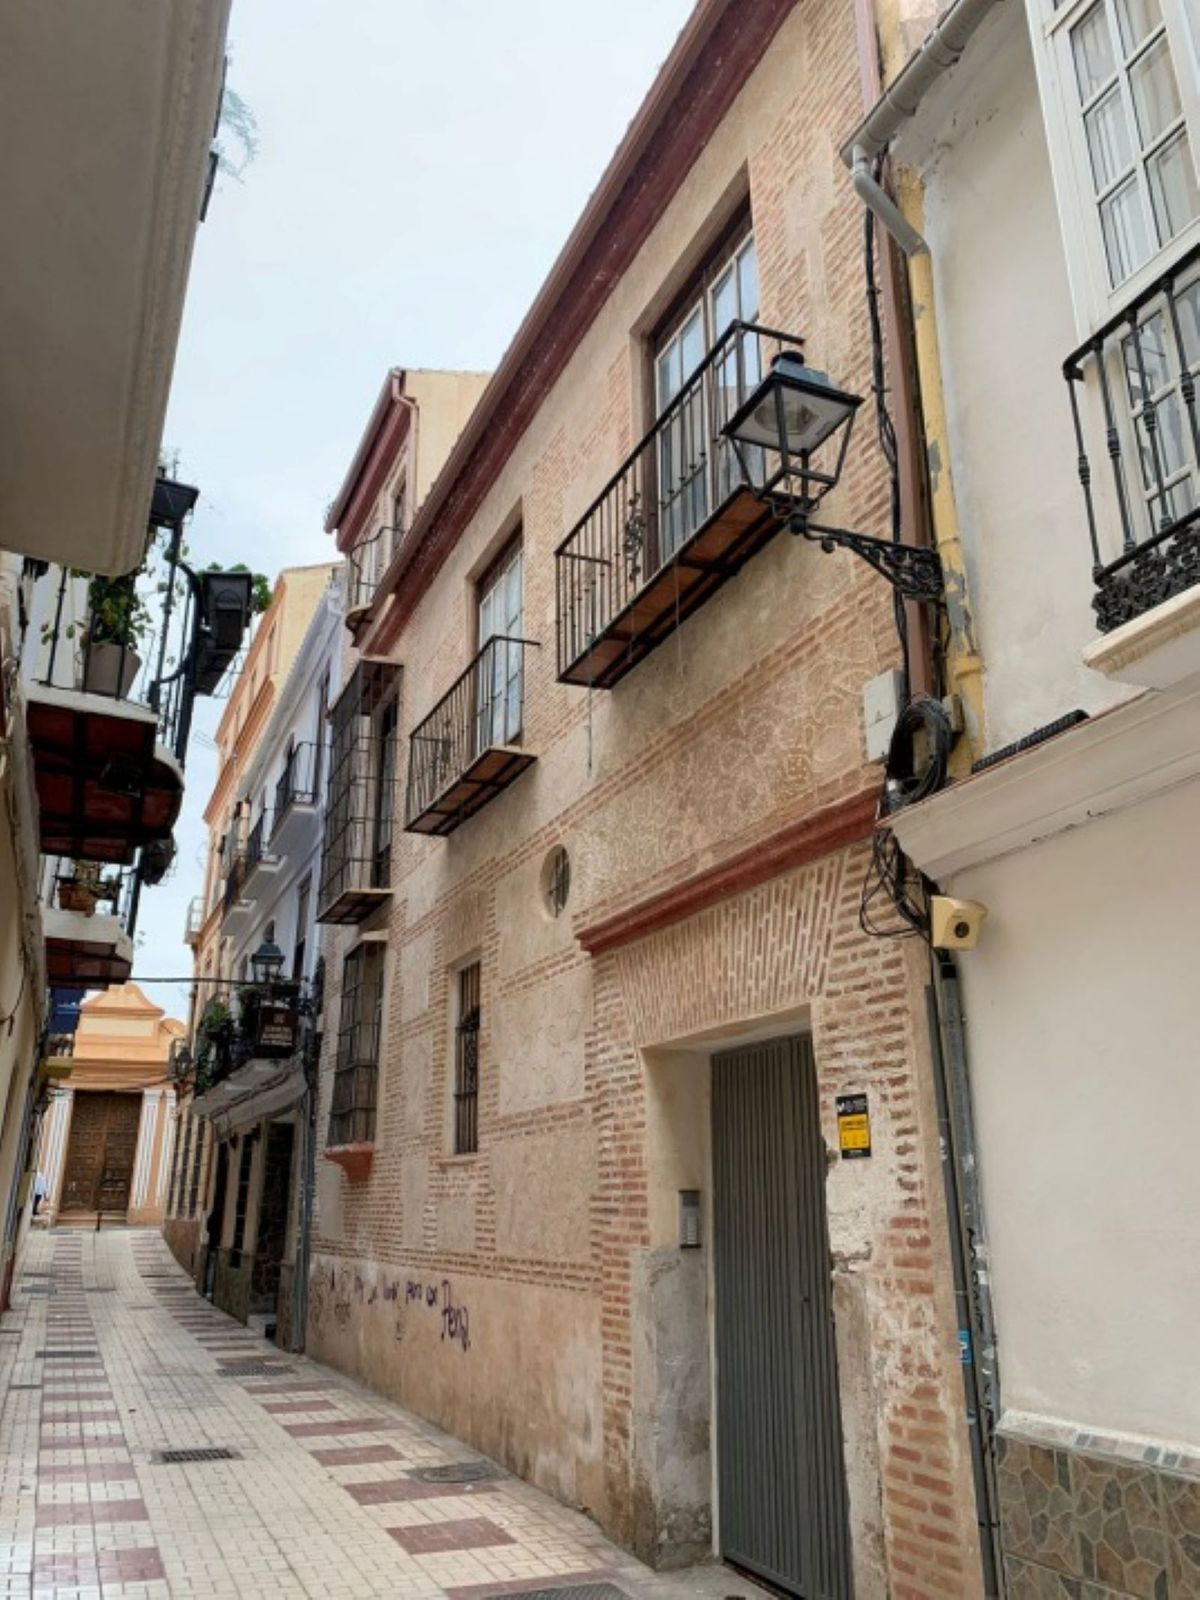 						Unifamiliar  Adosada
													en venta 
																			 en Malaga Centro
					